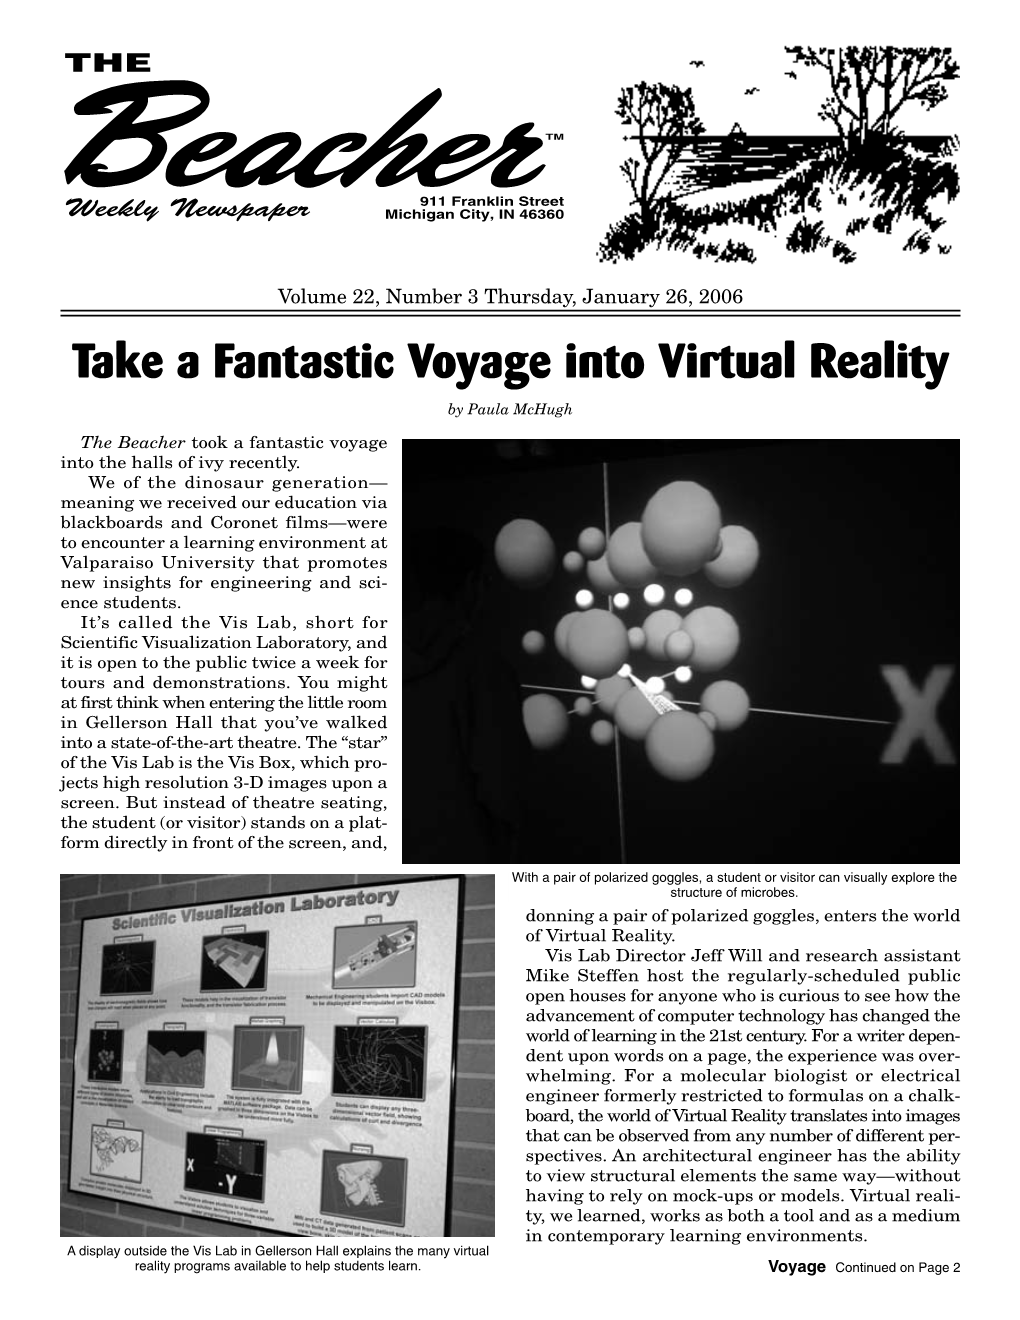 Take a Fantastic Voyage Into Virtual Reality by Paula Mchugh